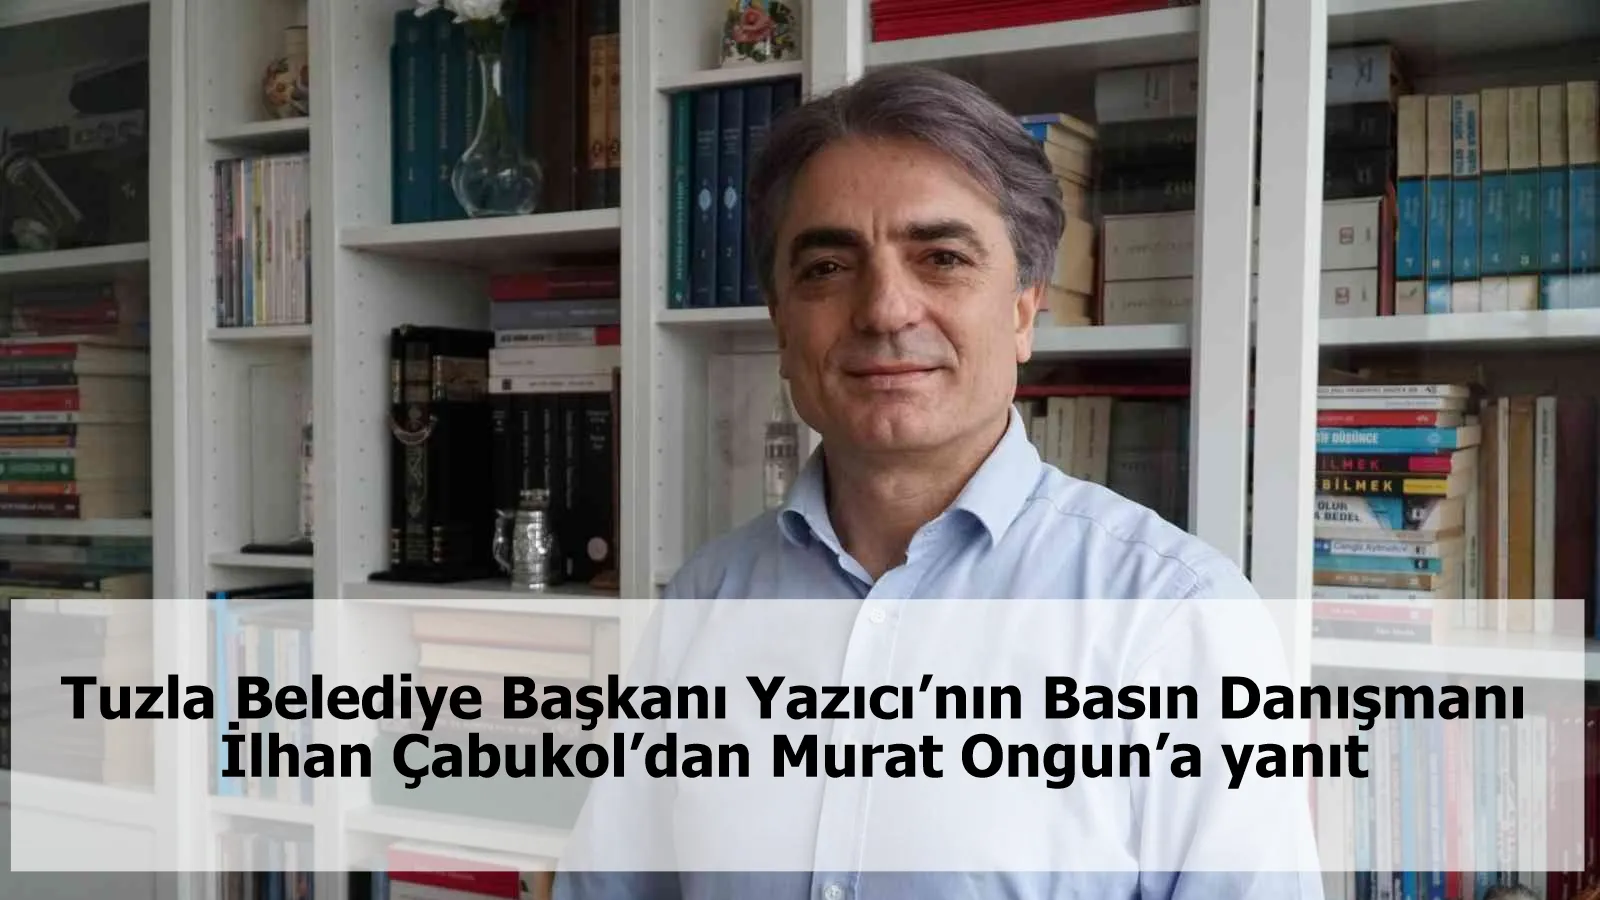 Tuzla Belediye Başkanı Yazıcı’nın Basın Danışmanı İlhan Çabukol’dan Murat Ongun’a yanıt